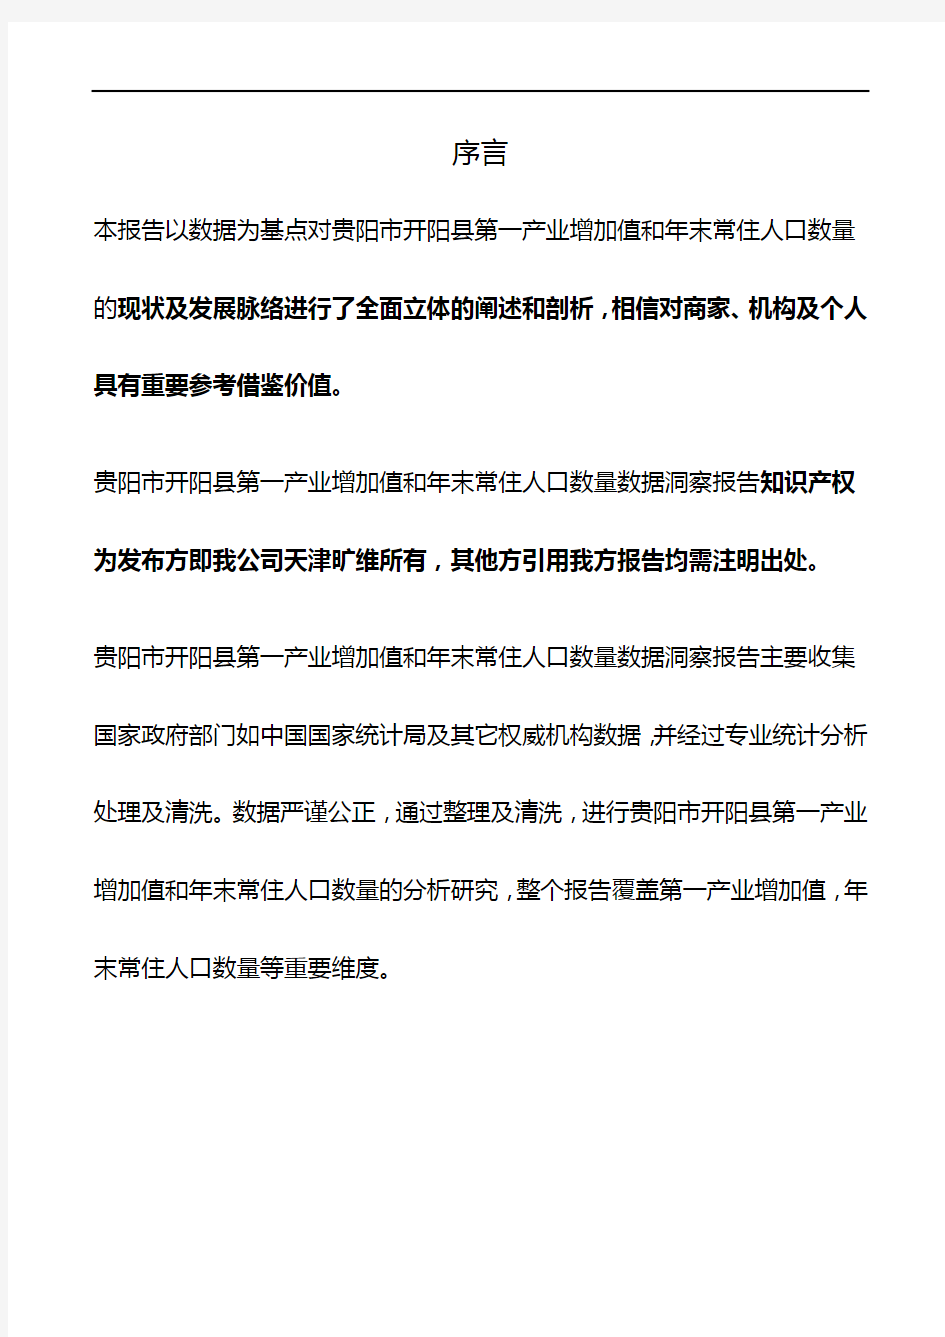 贵州省贵阳市开阳县第一产业增加值和年末常住人口数量3年数据洞察报告2020版